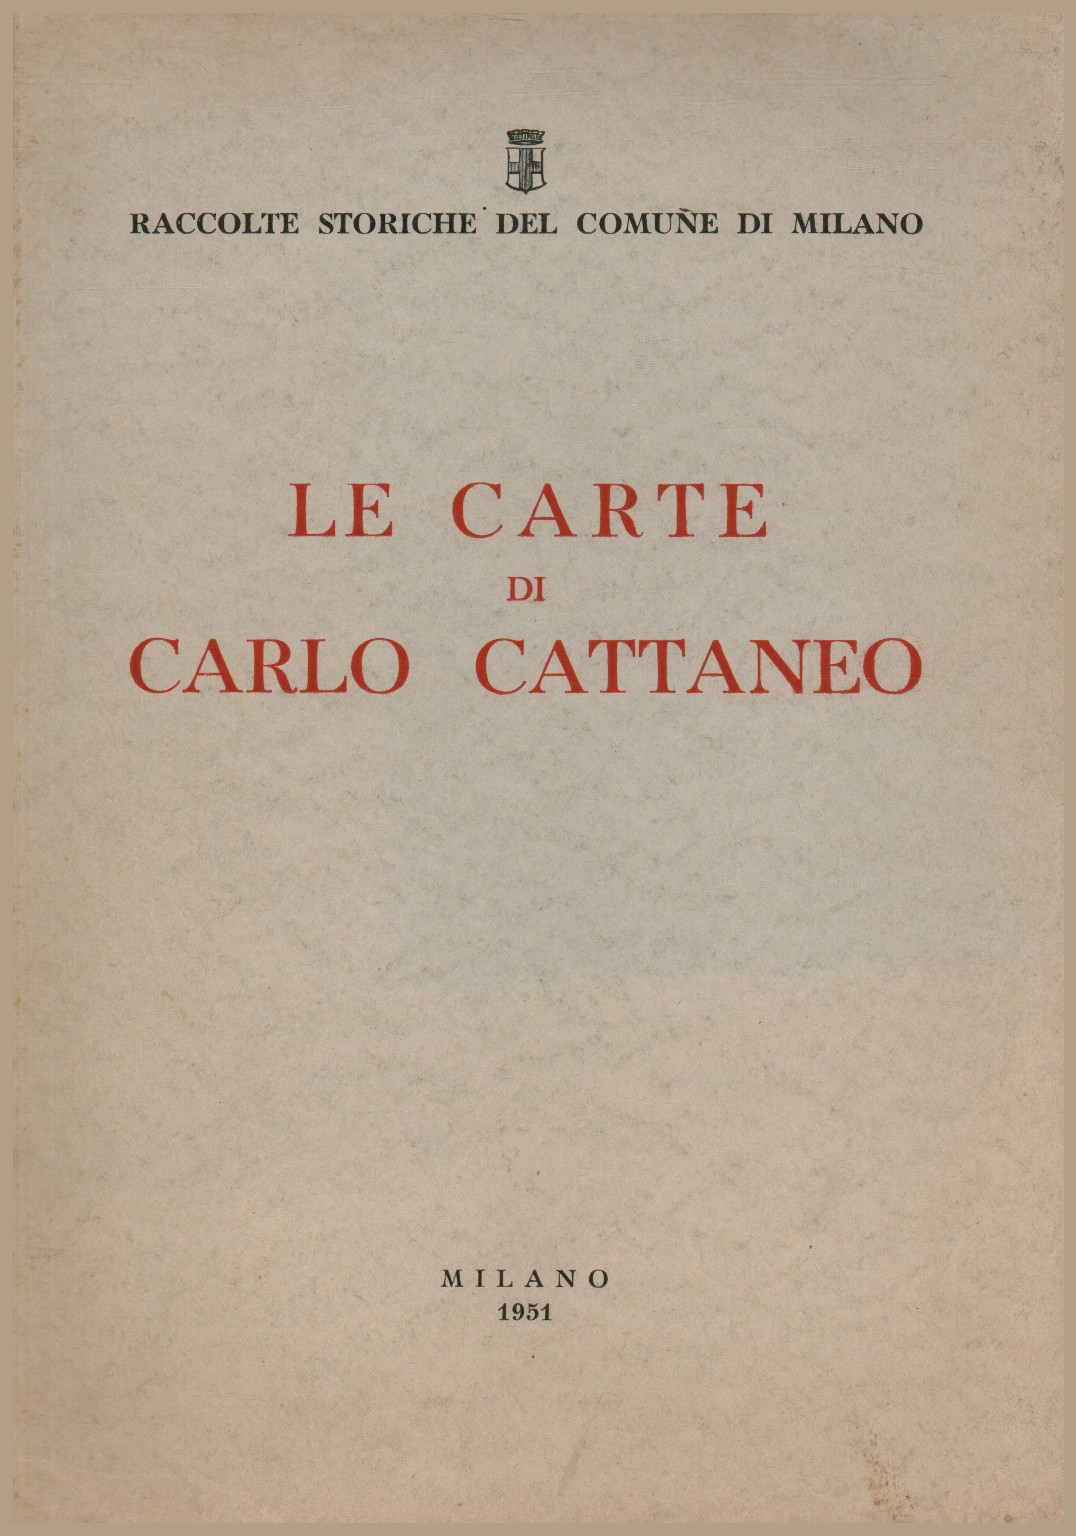 Le Carte di Carlo Cattaneo, s.a.